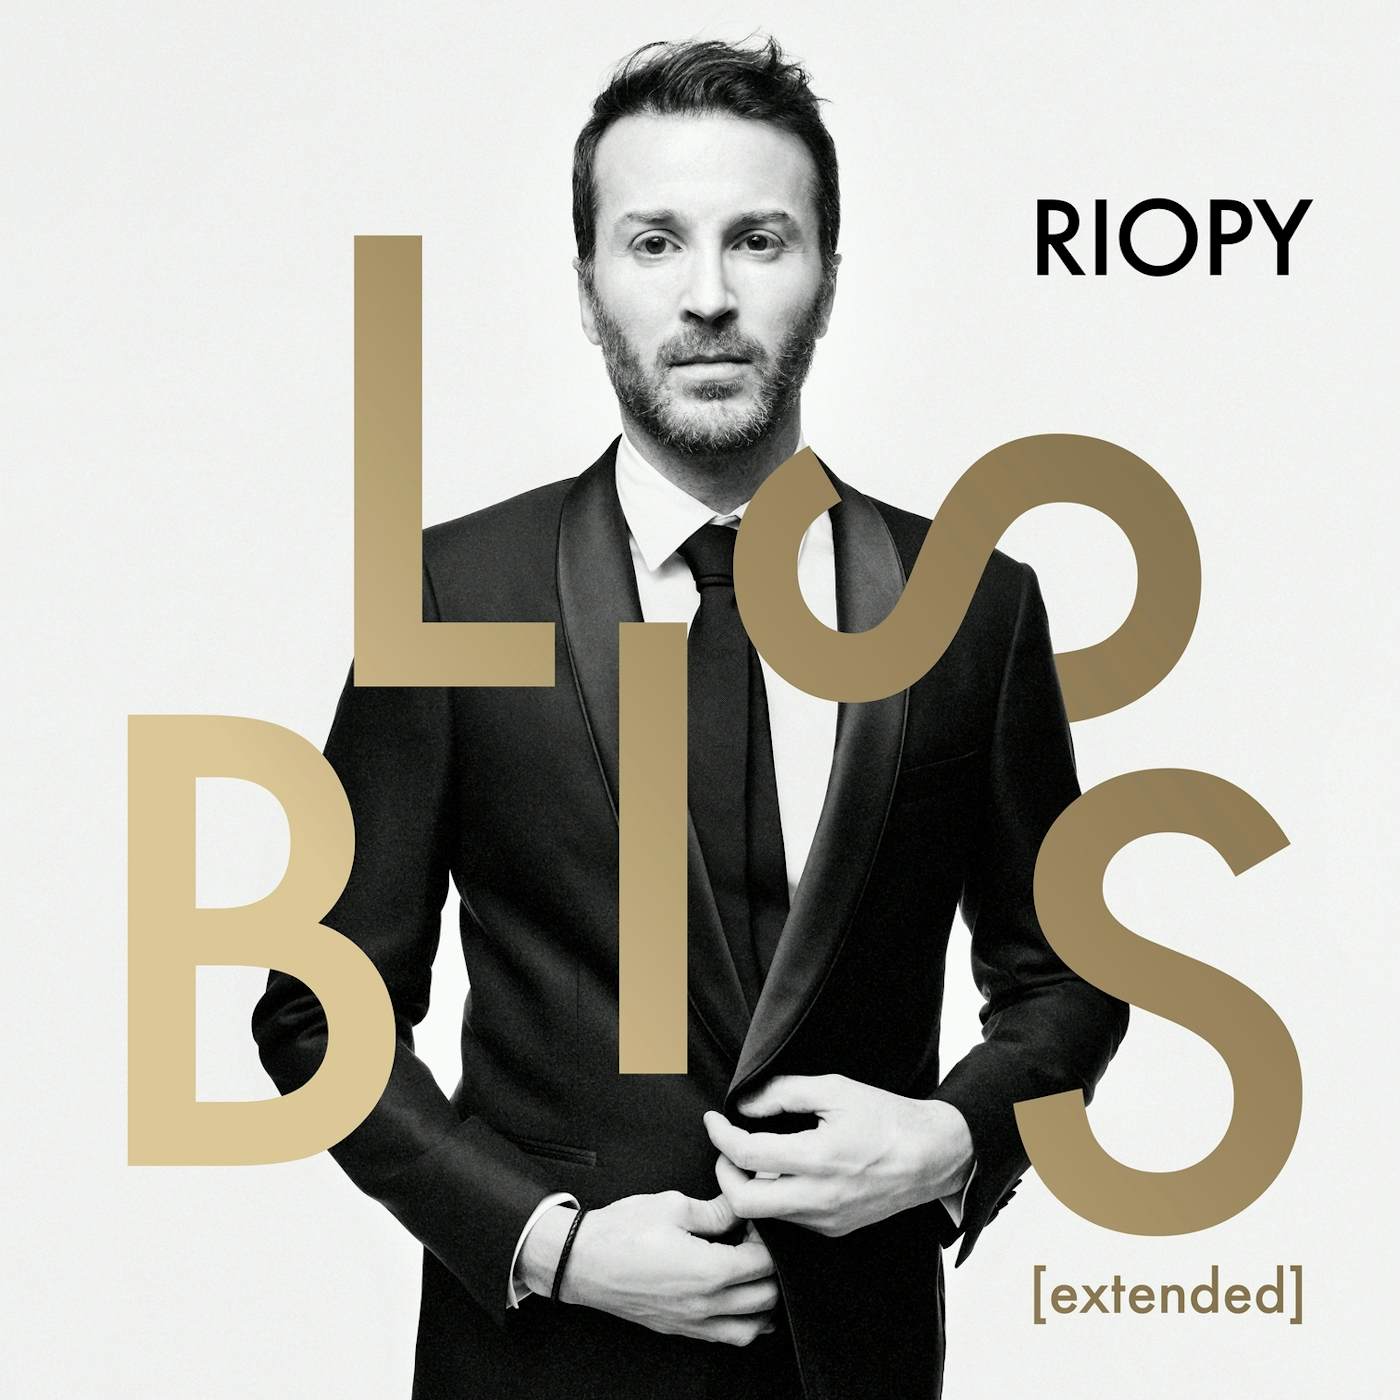 RIOPY Extended (Bliss) CD